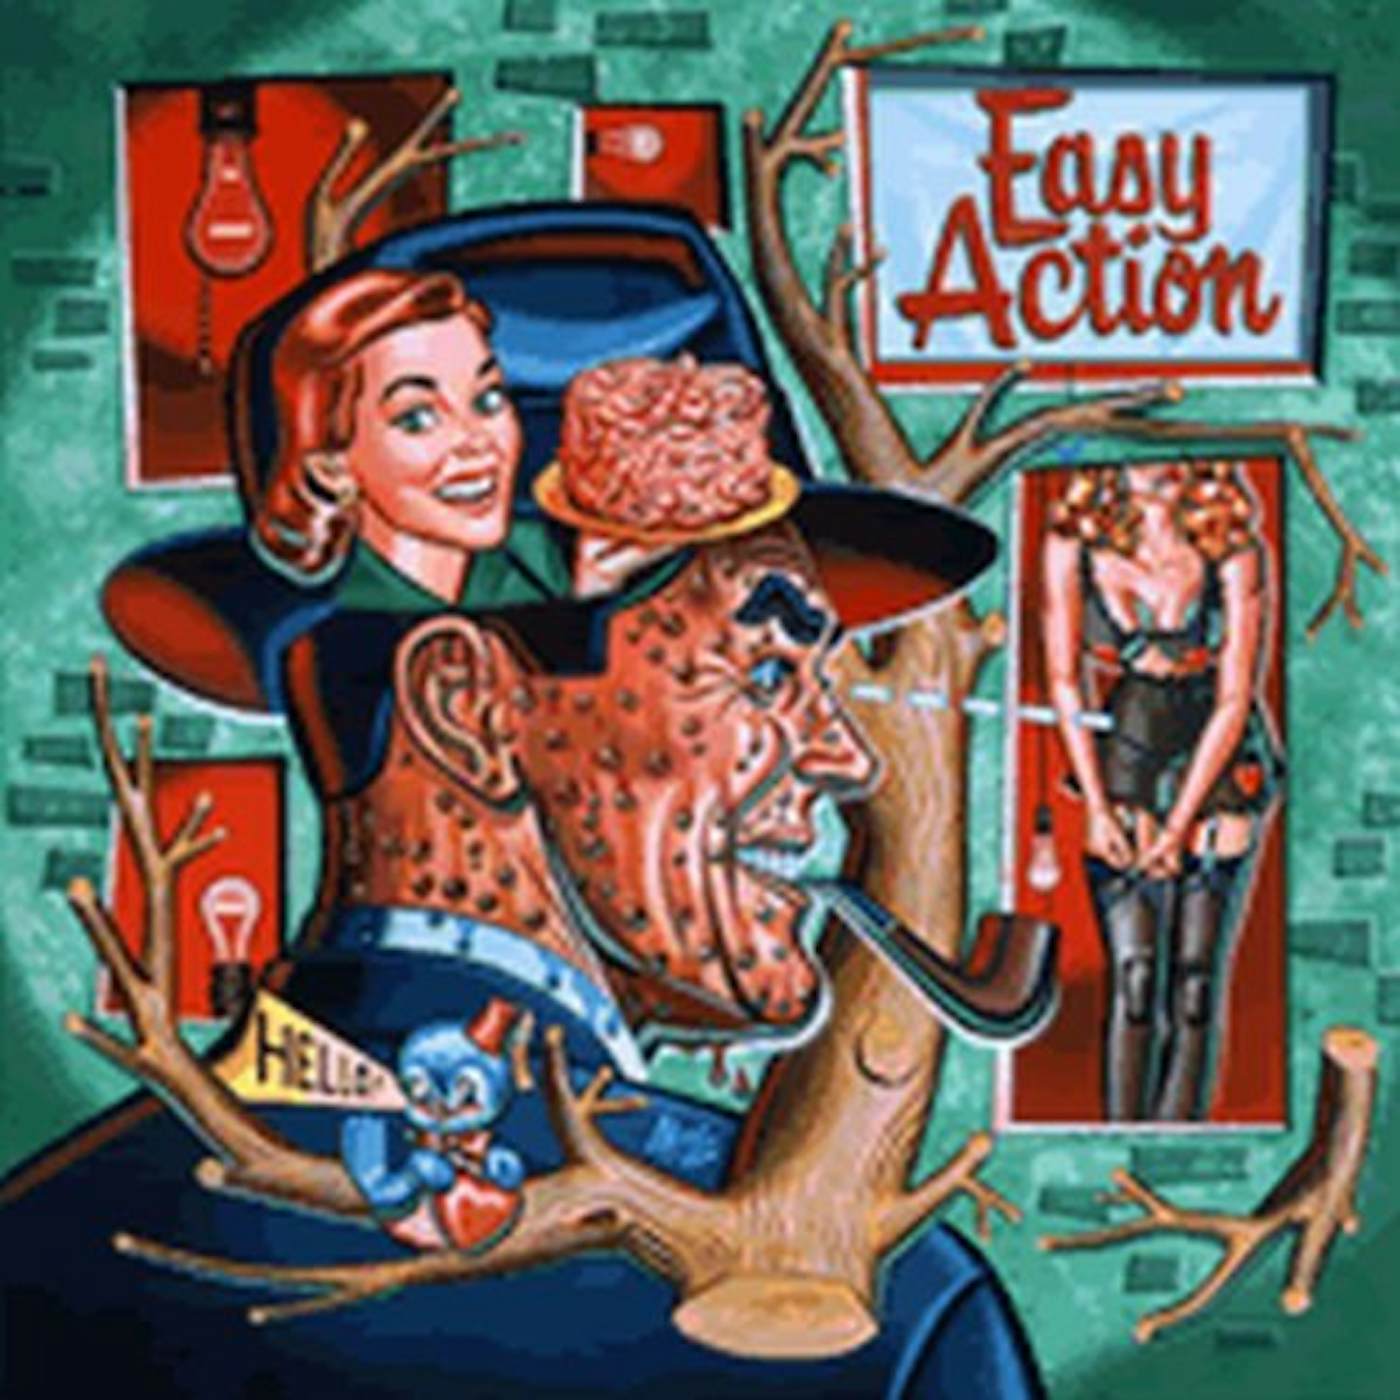 Easy Action Vinyl Record